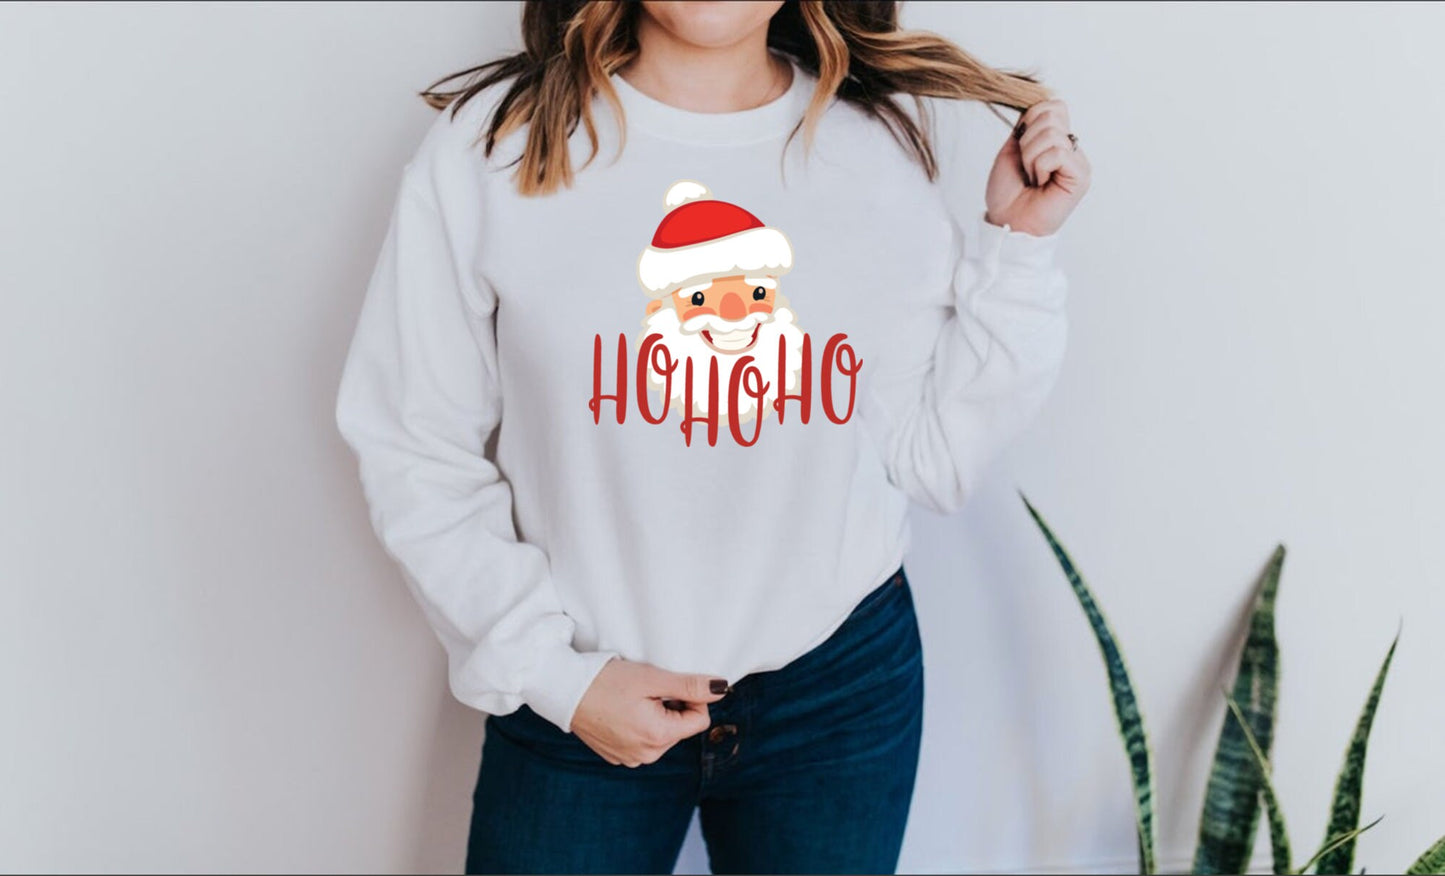 HO HO HO Sweatshirt, Christmas Shirt, Santa Sweatshirt, Santa Clause Tee, Holiday Sweatshirt, Seasonal Tee